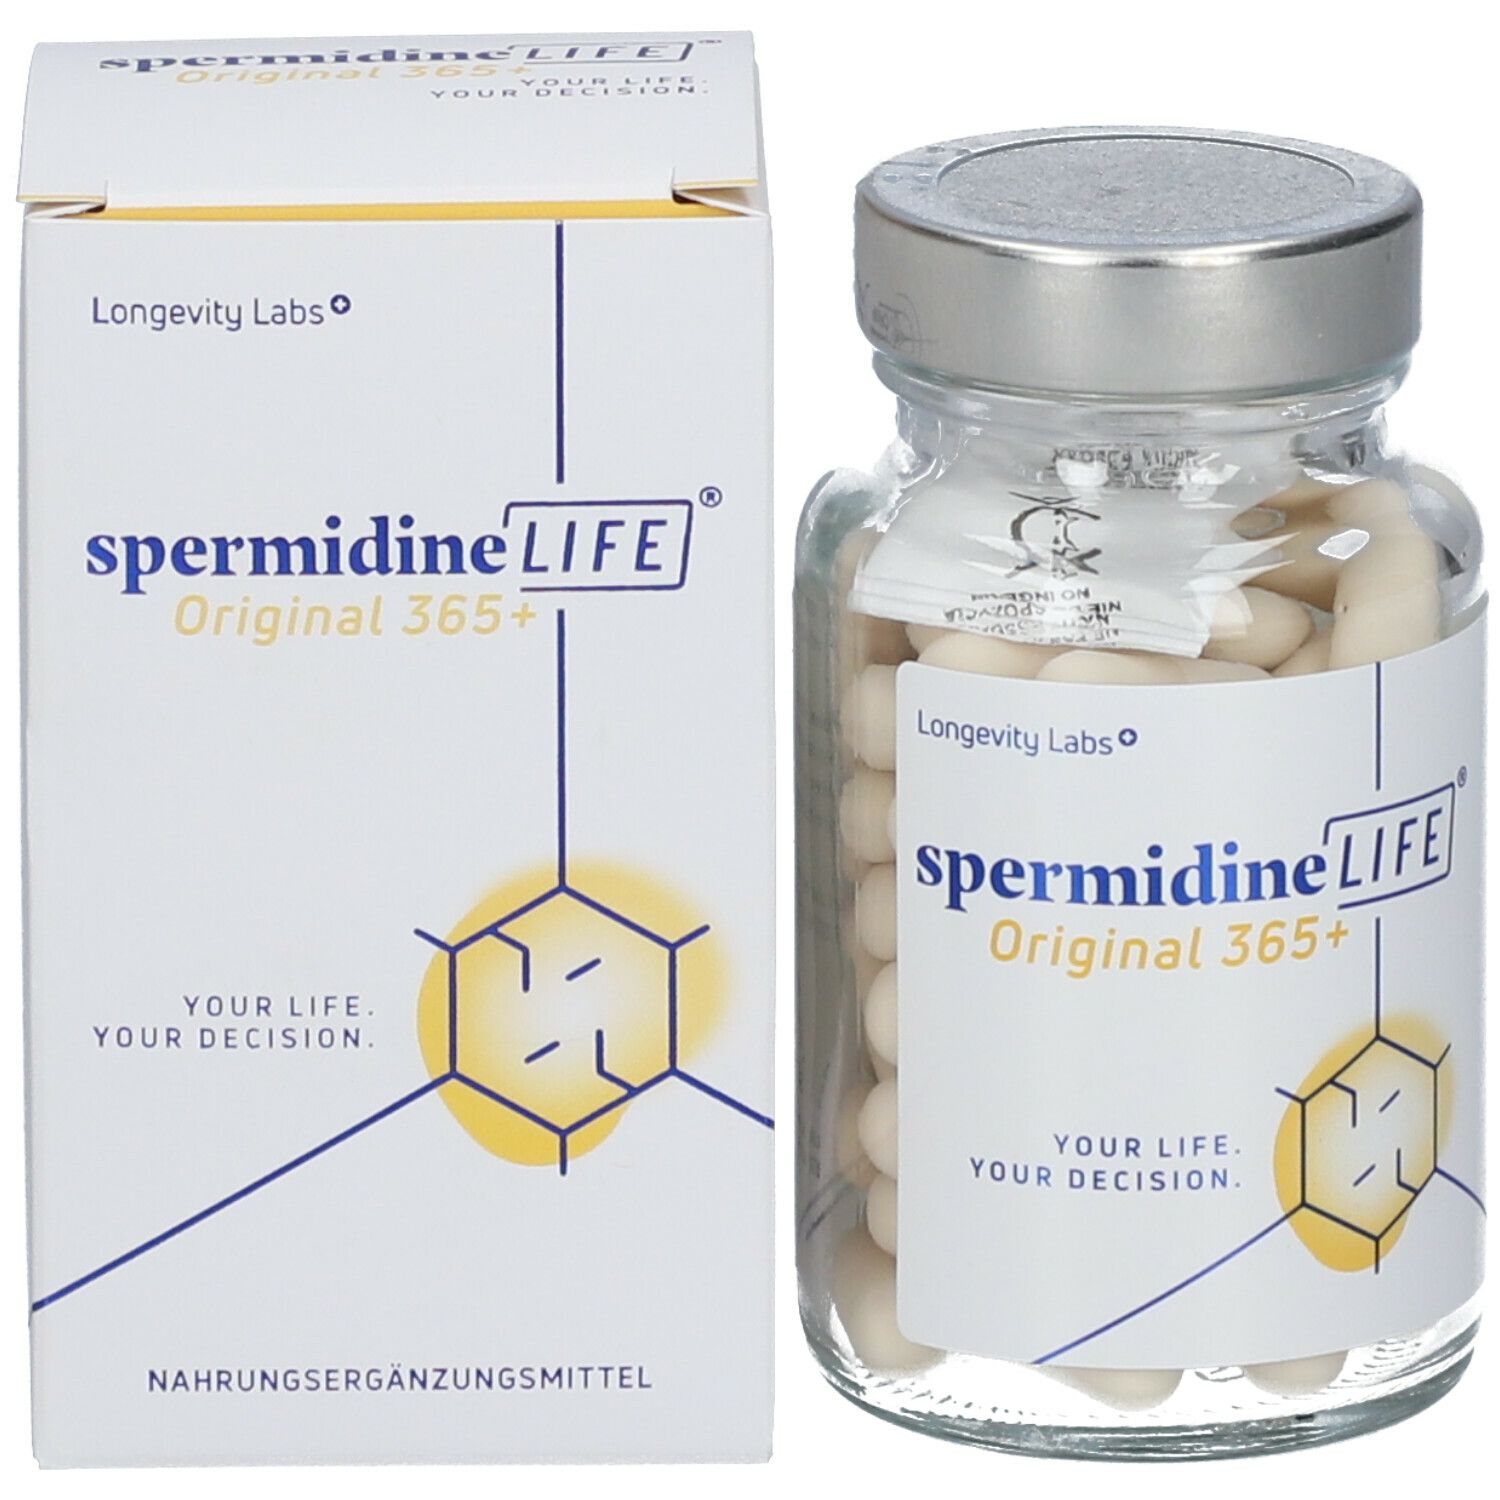 spermidineLIFE® Original 365+